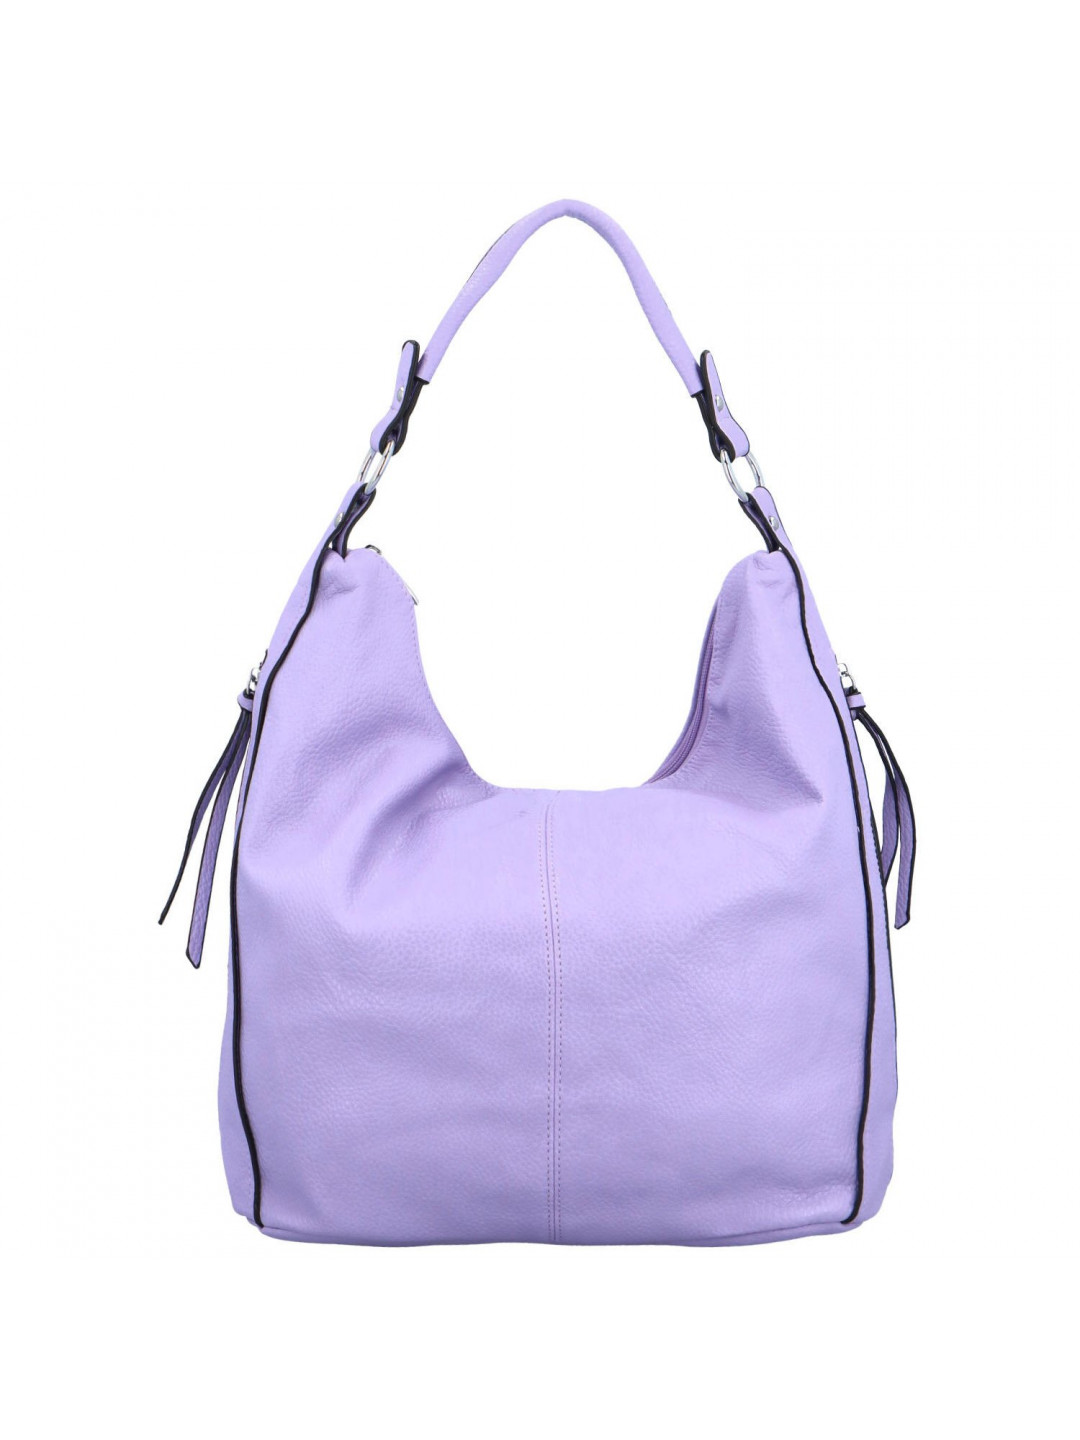 Trendy dámská kabelka přes rameno Staphine fialová